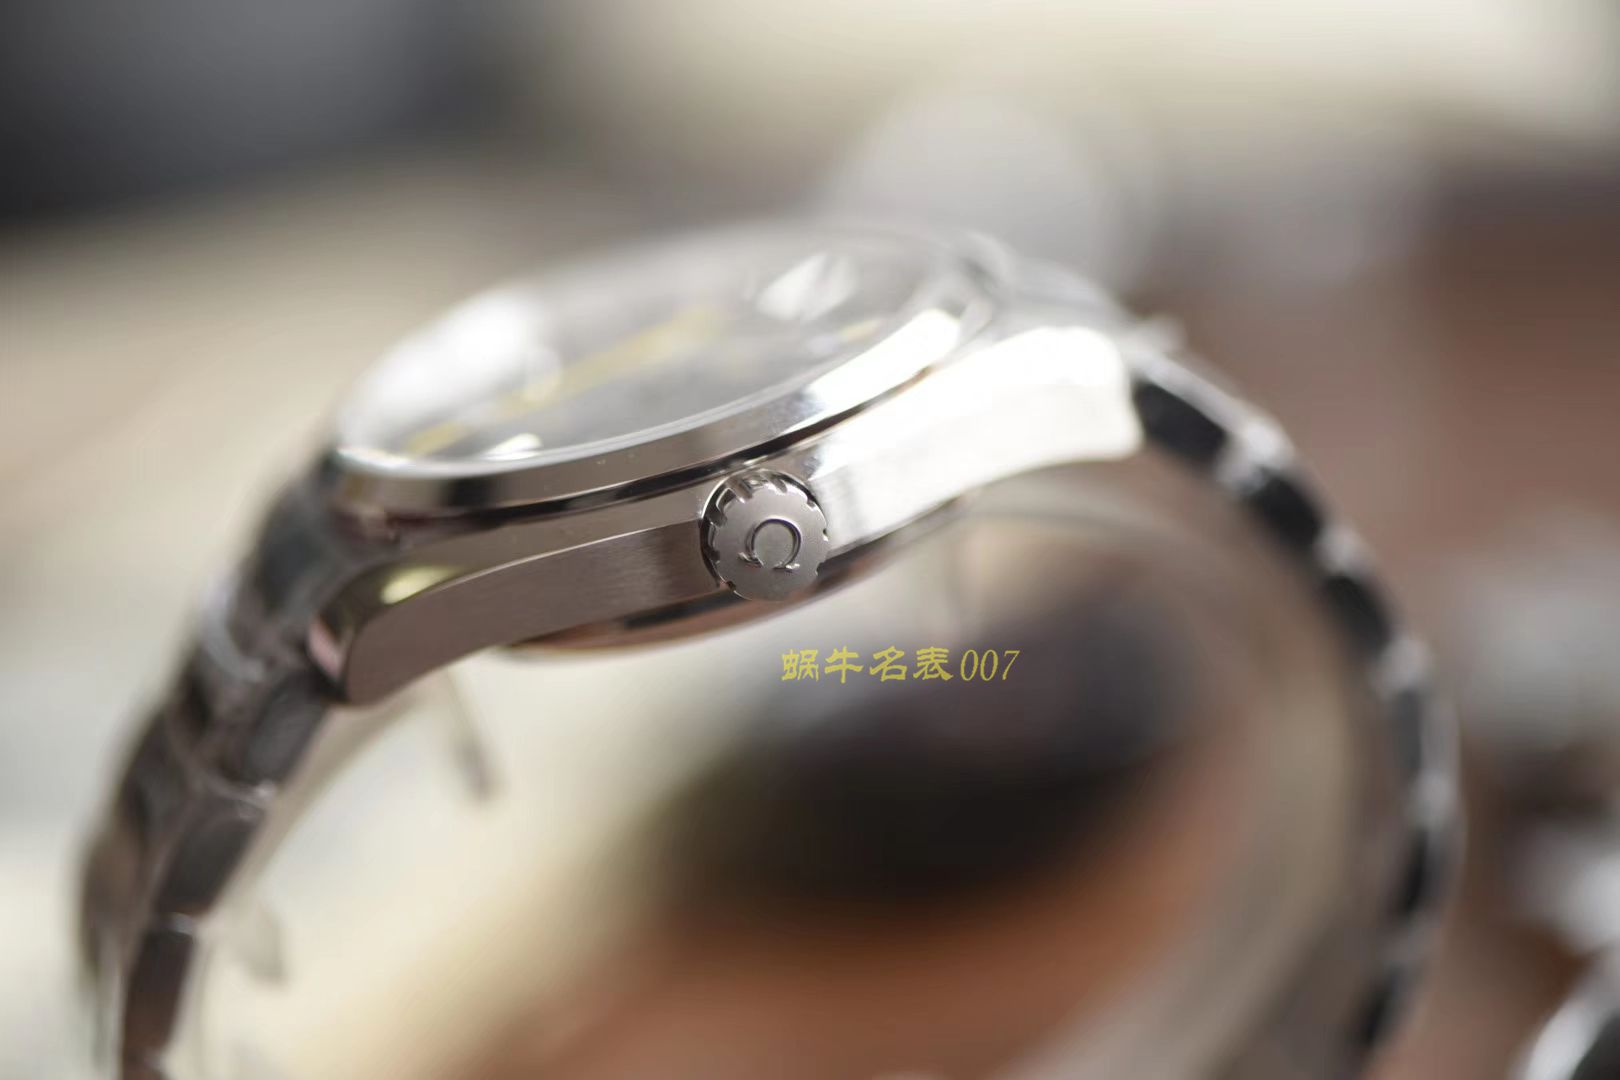 【VS一比一超A高仿手表】欧米茄海马系列 007詹姆斯邦德限量版 231.10.42.21.03.004机械腕表 